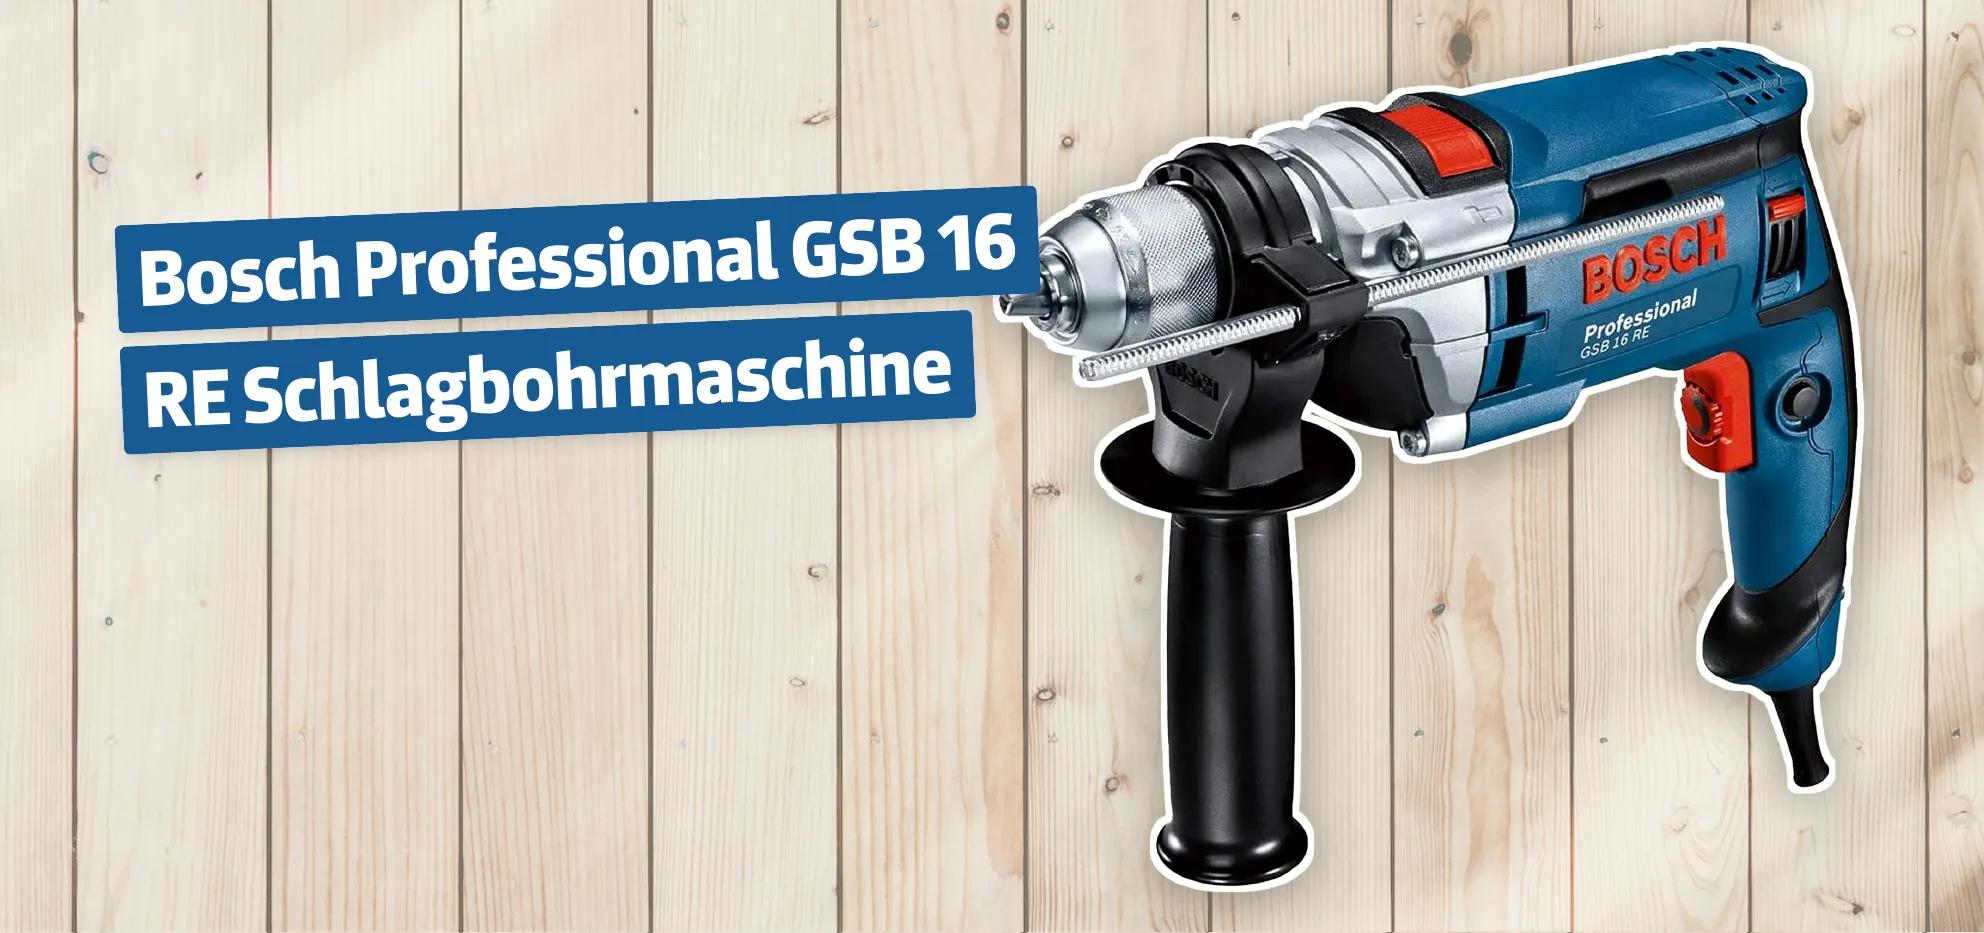 Bosch Professional GSB 16 RE Schlagbohrmaschine